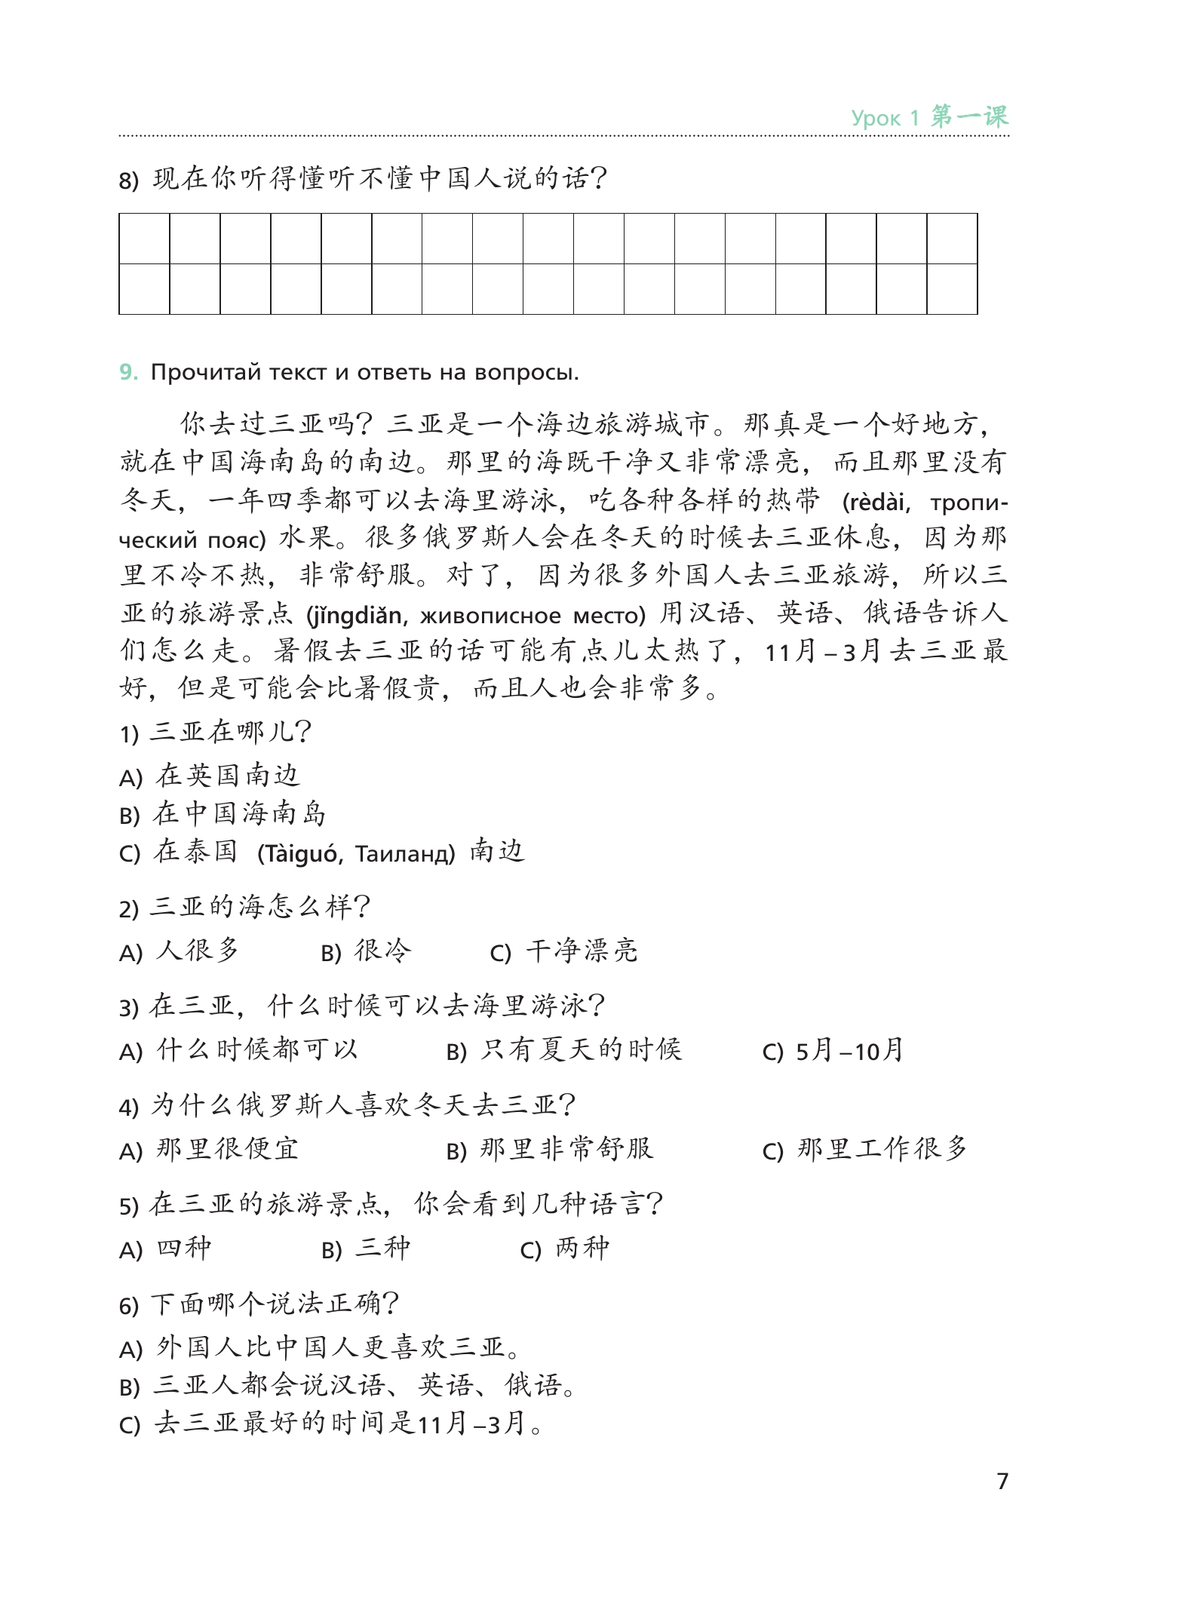 Китайский язык. Рабочая тетрадь. 9 класс 8